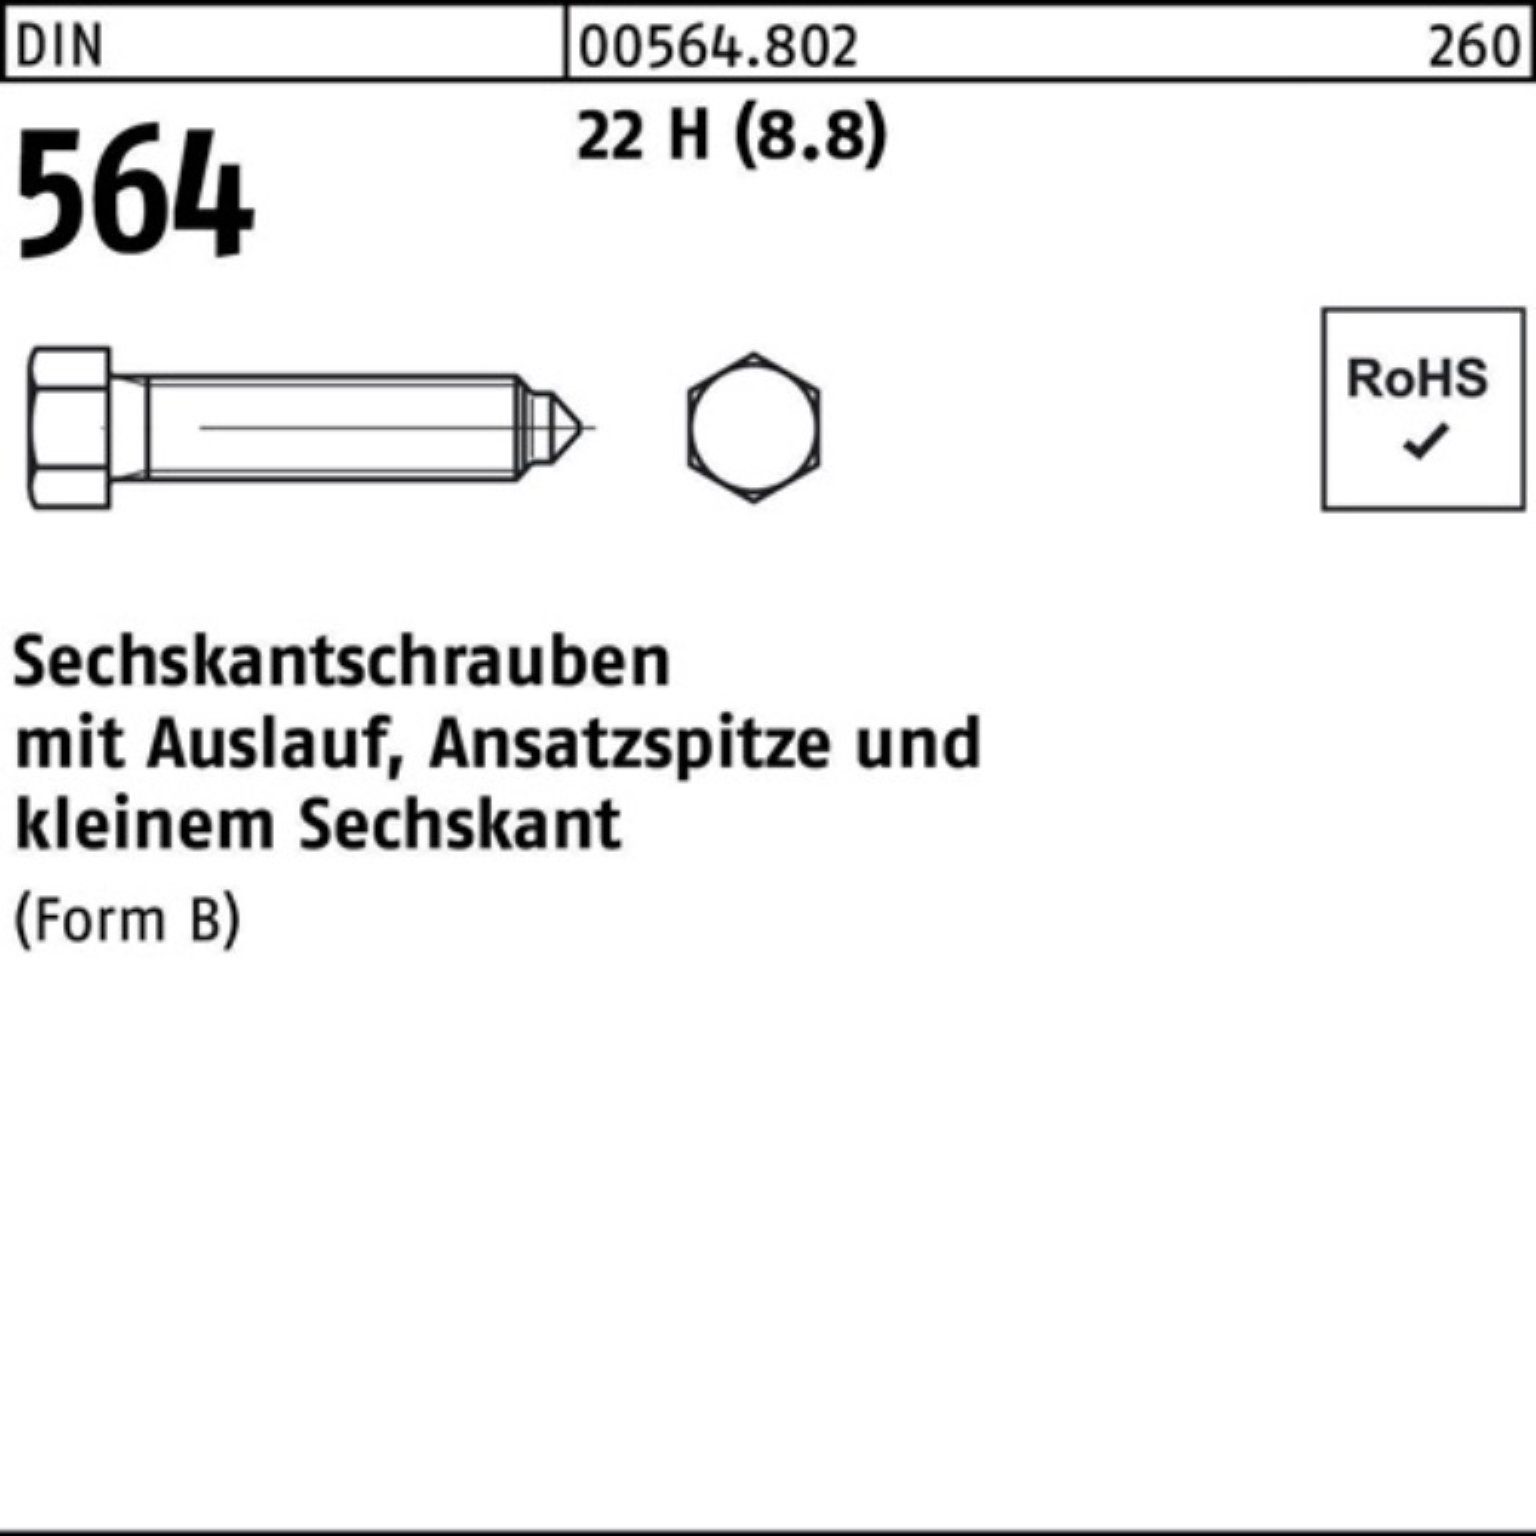 564 16x Sechskantschraube Sechskantschraube BM DIN Pack 90 22 100er Reyher Ansatzspitze/Auslauf